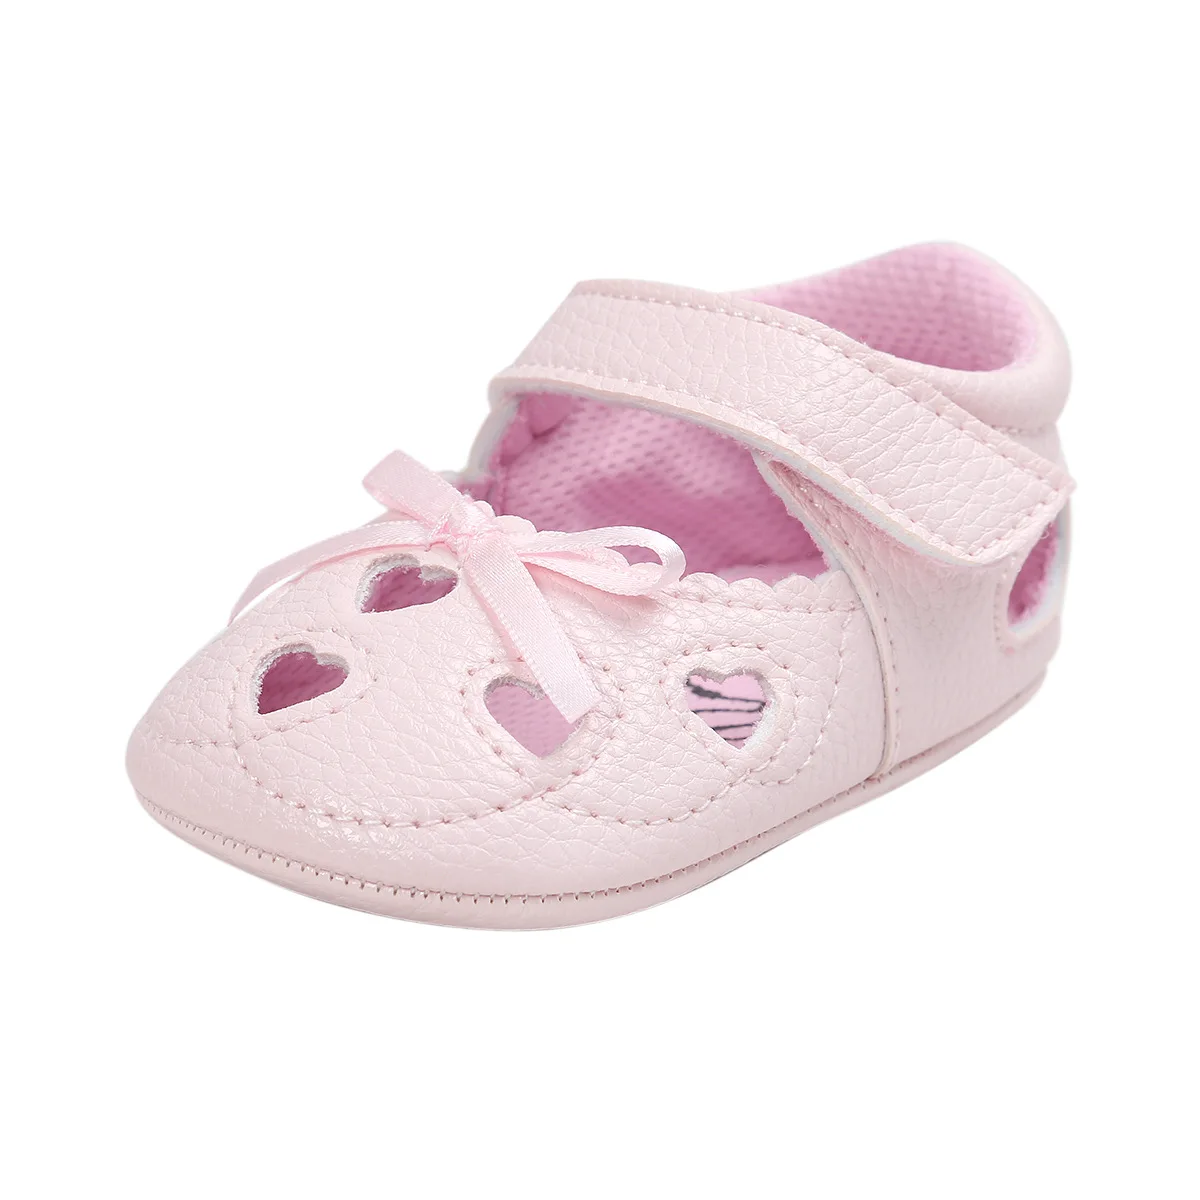 8 видов цветов из искусственной кожи, для детей обувь детская Мокасины Обувь для новорожденных Мягкие младенцев обувь для малышей, Мокасины, для тех, кто только начинает ходить. CX83C